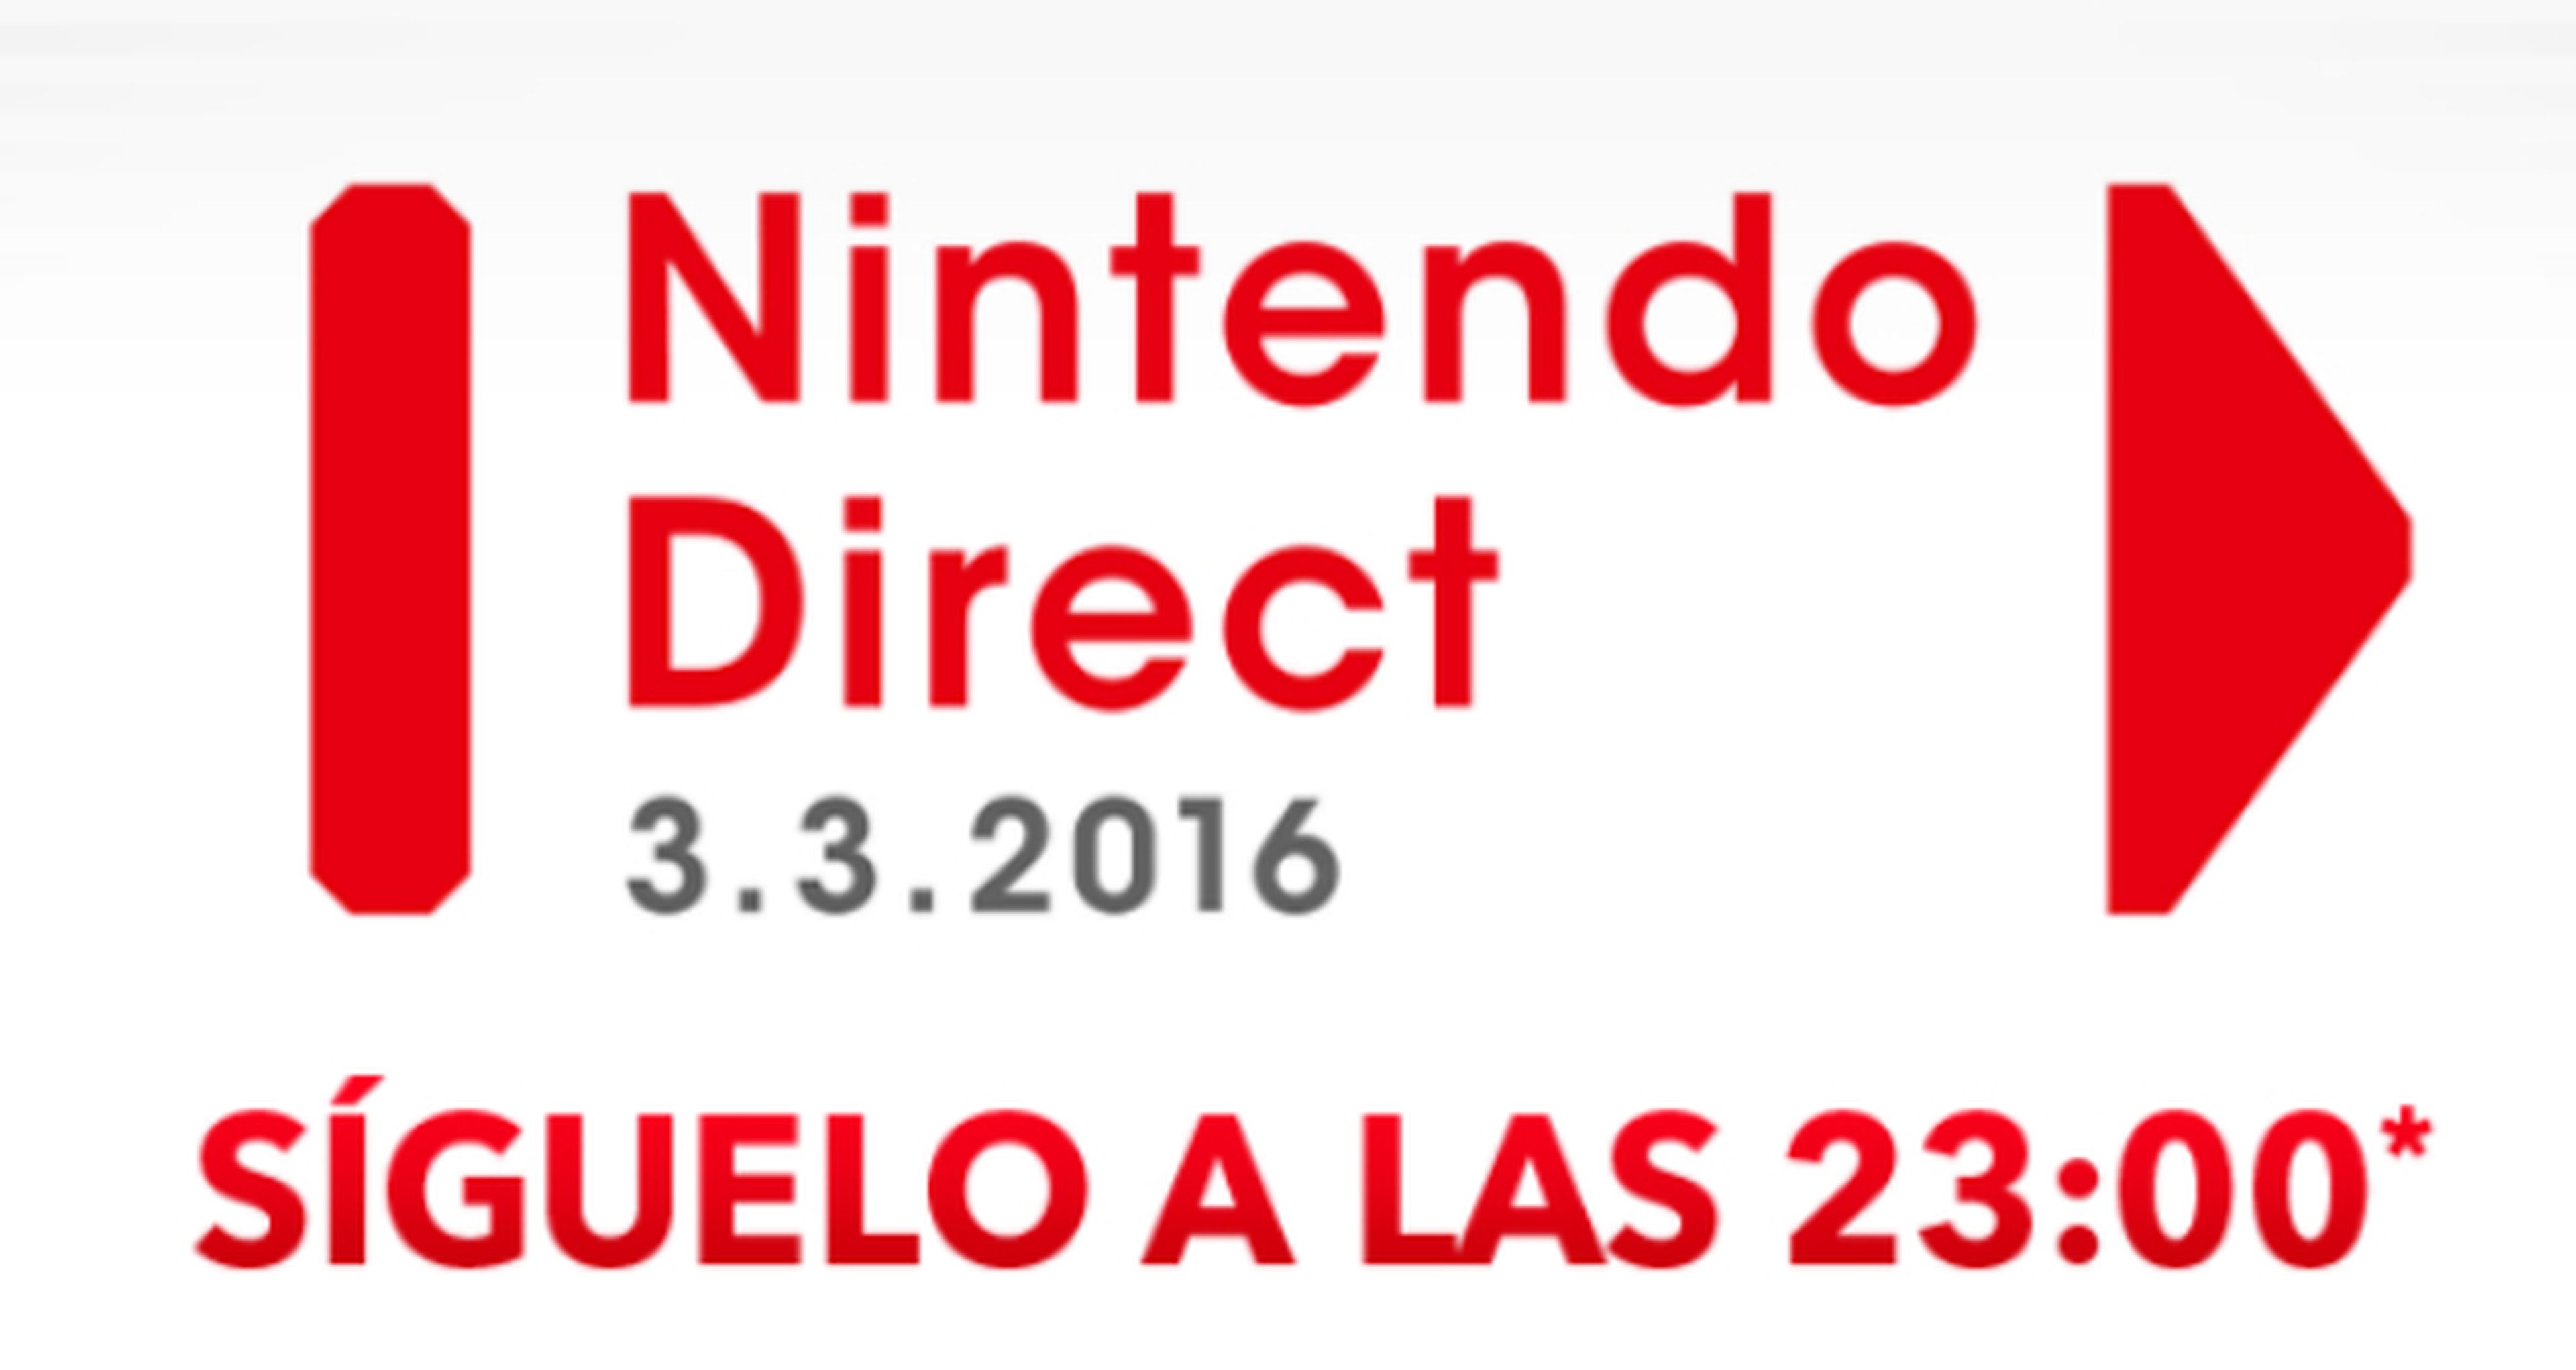 Nintendo Direct - Ya puedes verlo en diferido